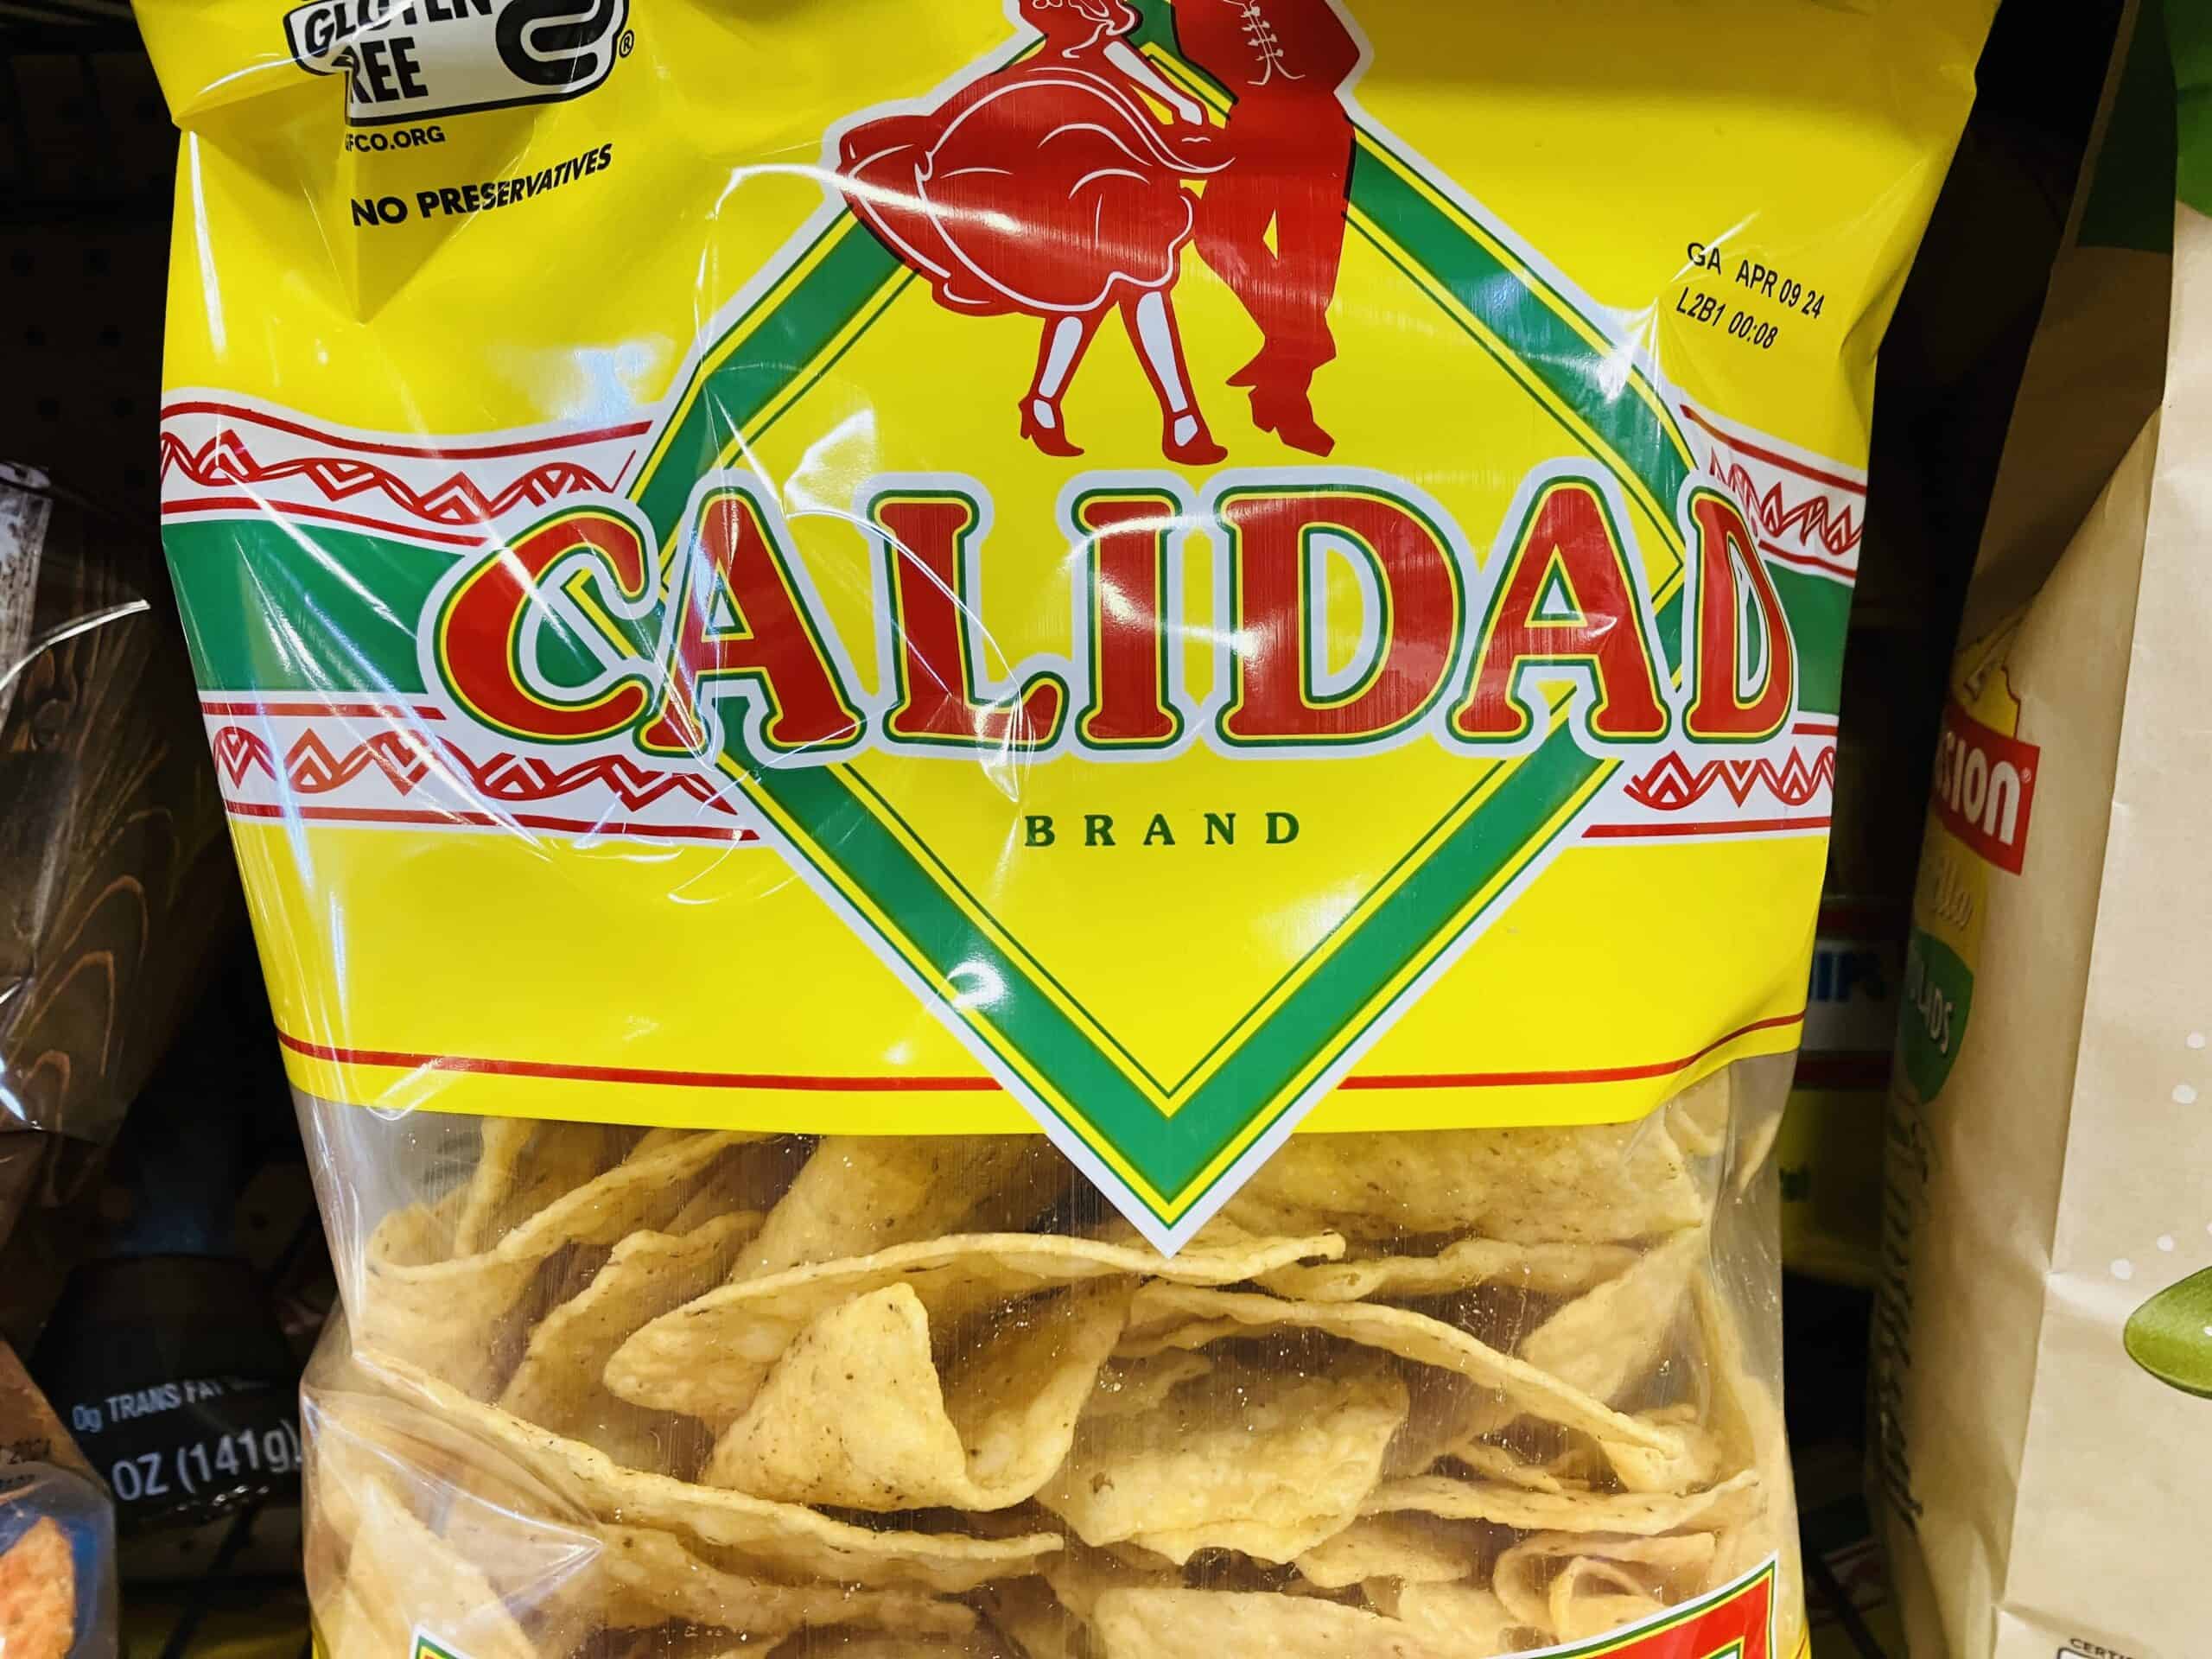 Calidad yellow corn tortilla chips